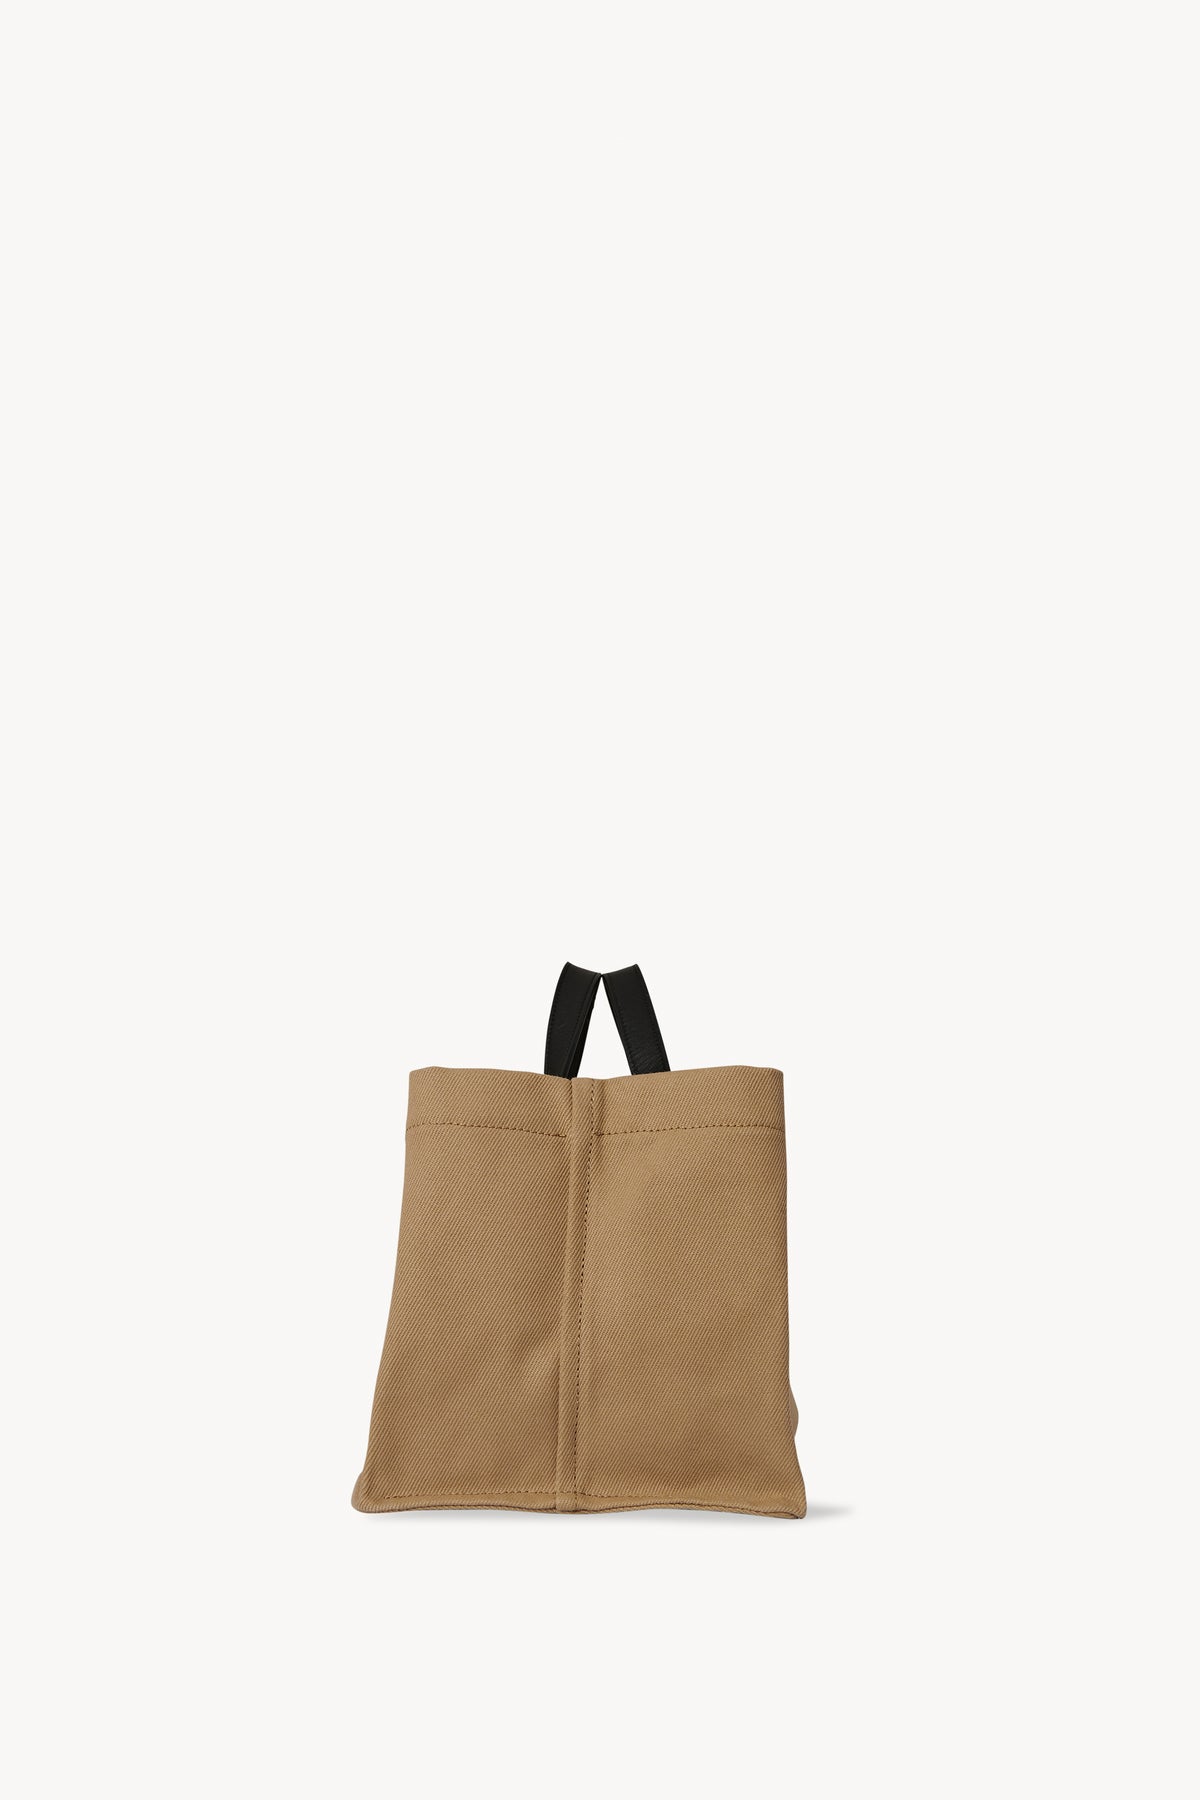 Idaho Bag in Cotton